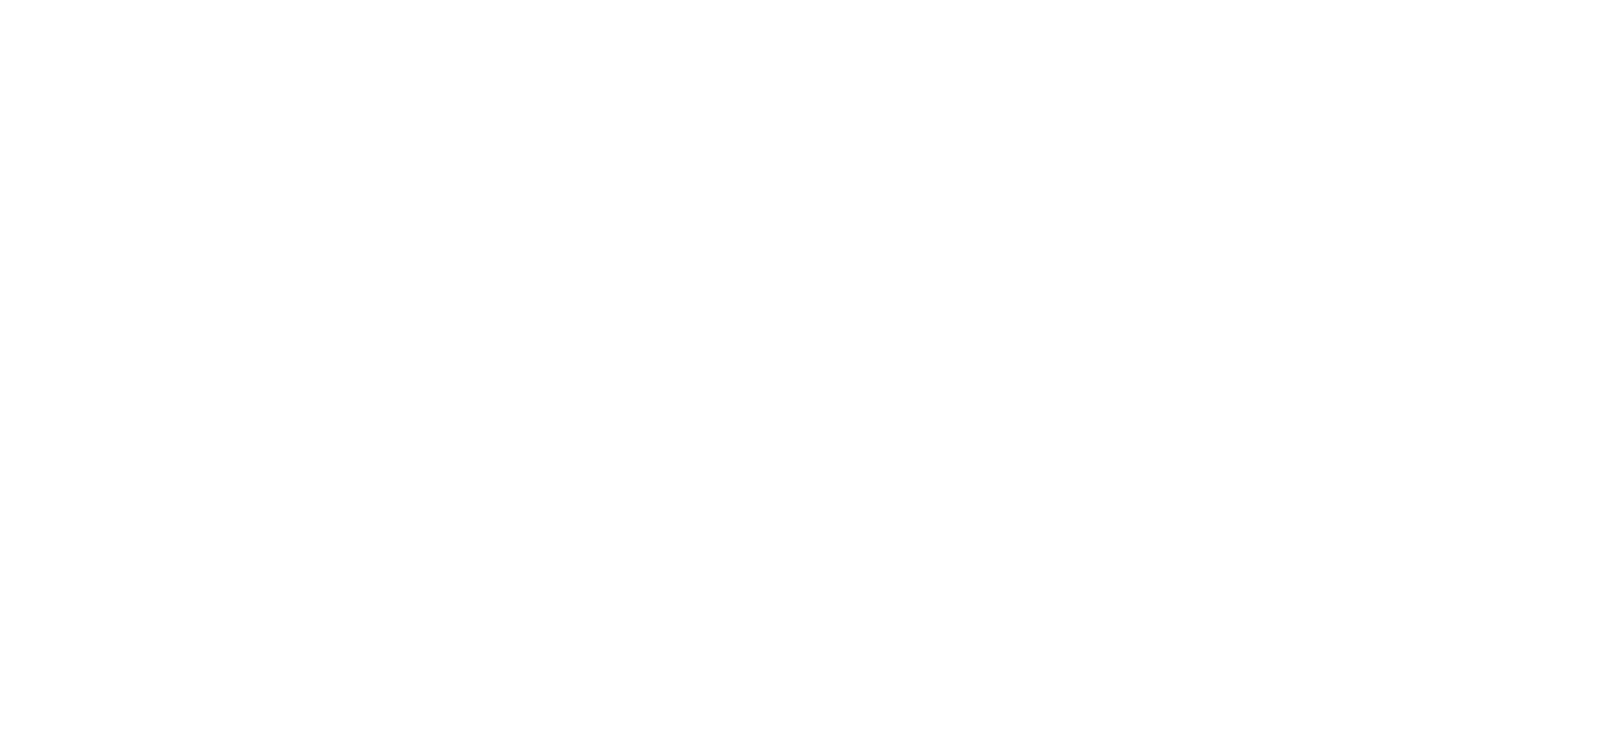 Nicolaus Copernicus University in Torun logo white transparent